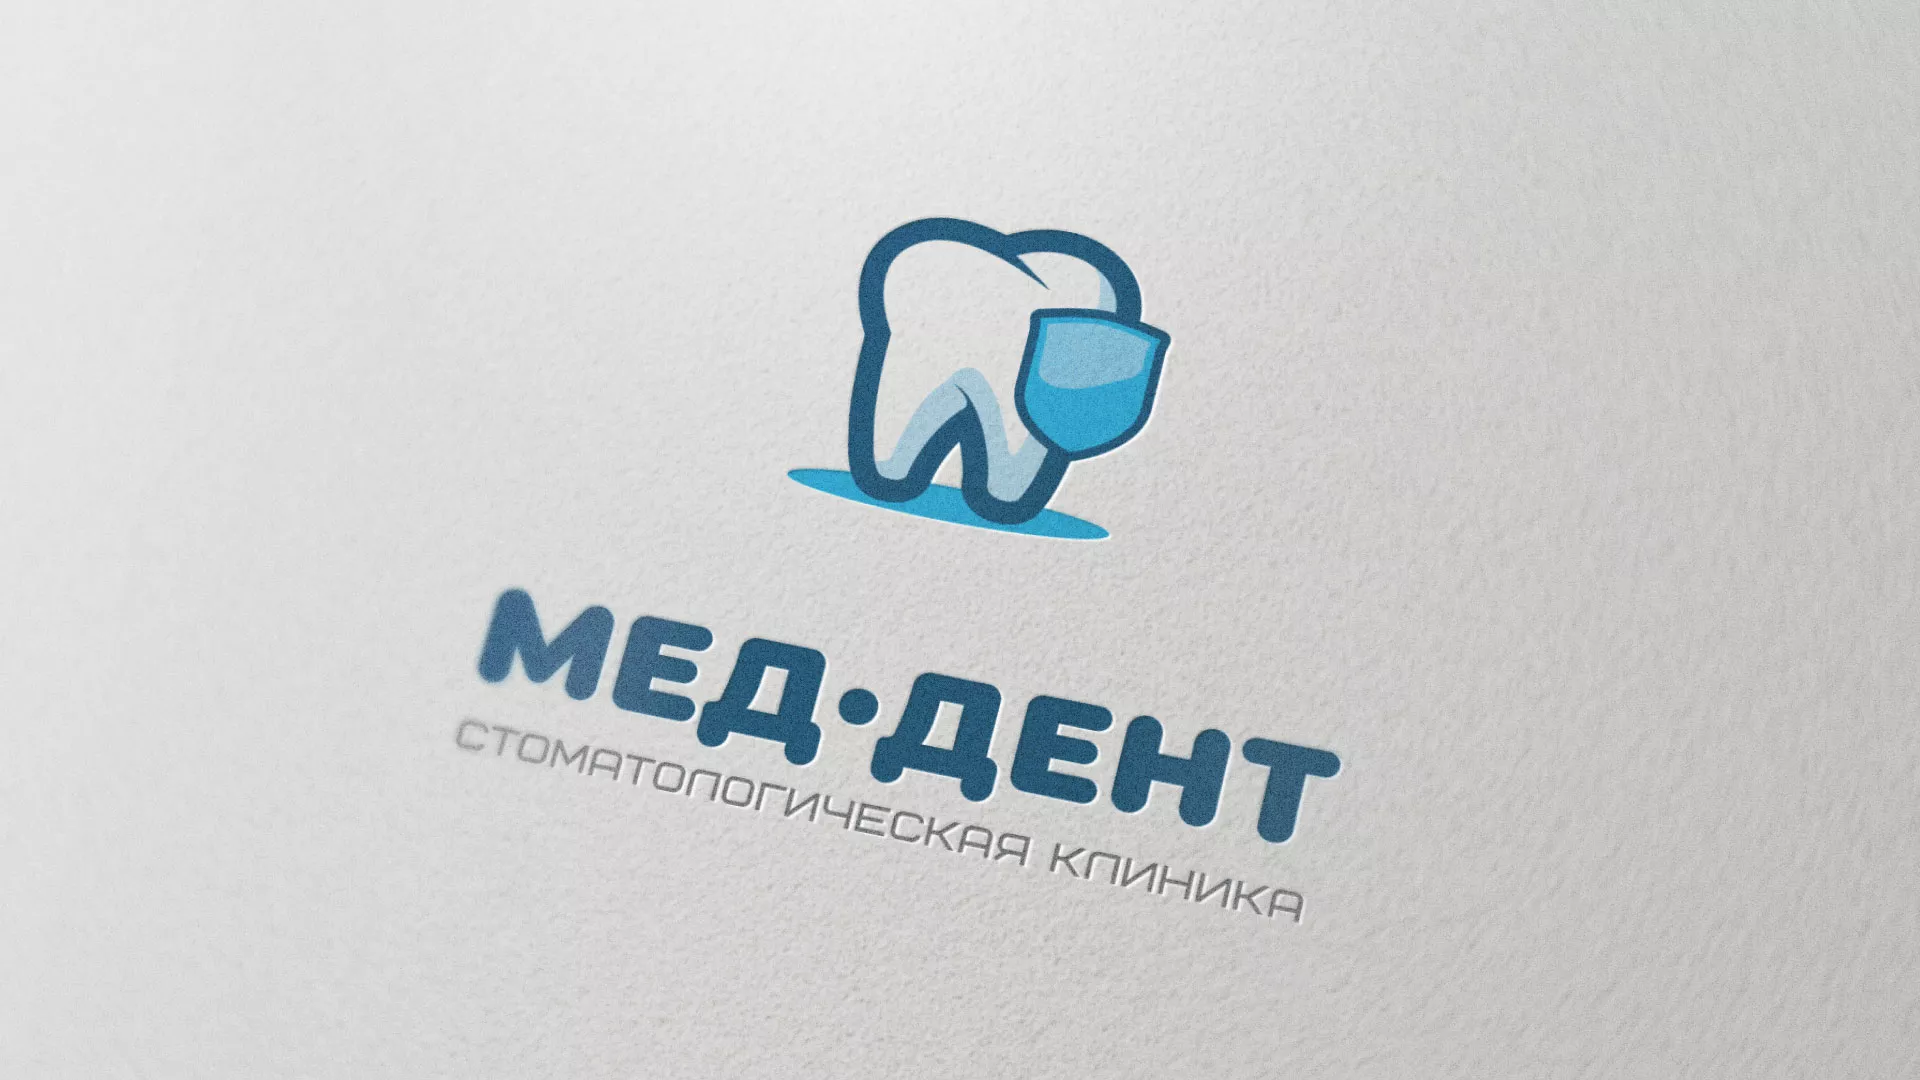 Разработка логотипа стоматологической клиники «МЕД-ДЕНТ» в Старой Руссе